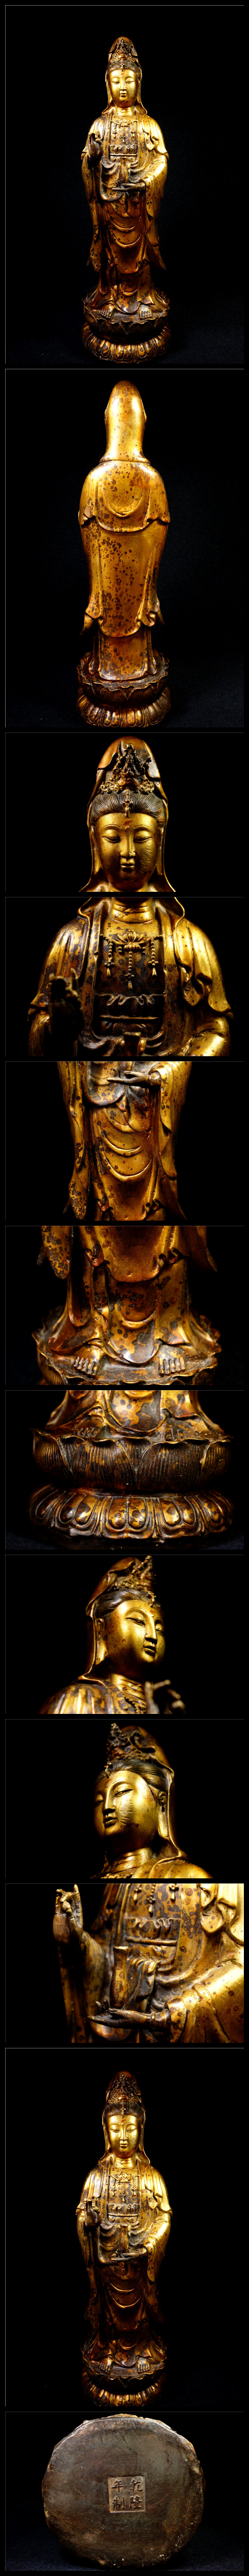 大得価在庫金銅細工 仏教 大迫力観音菩薩造像高彫 乾隆年製 鎮宅 開運財運置物 極上質 仏像